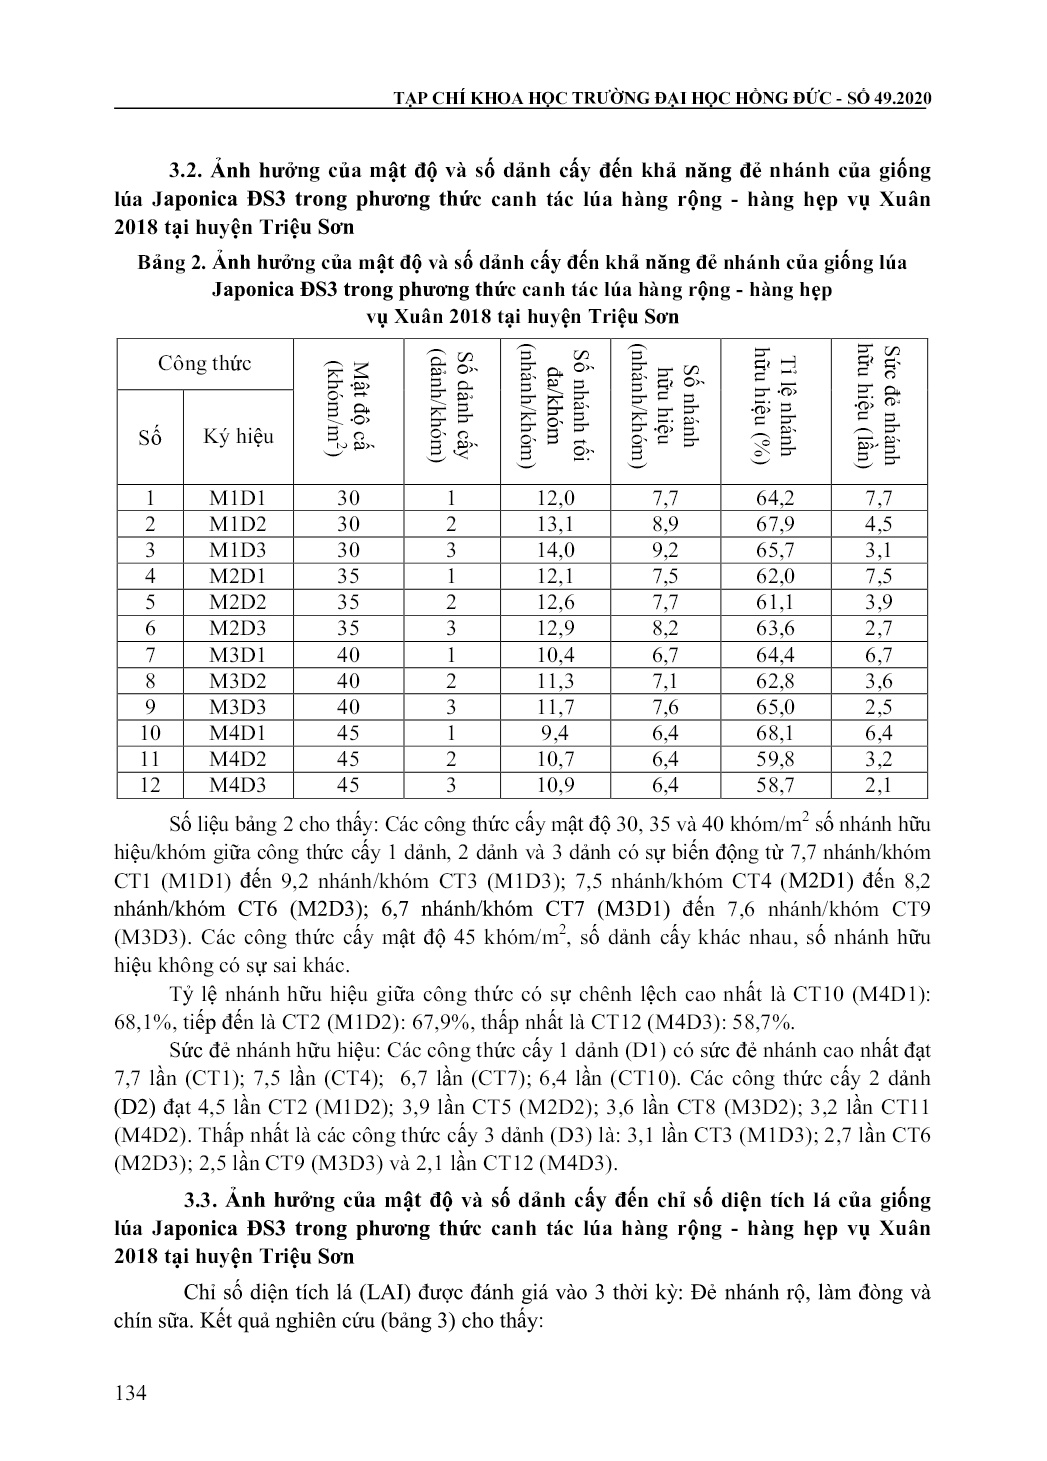 Kết quả nghiên cứu ảnh hưởng của mật độ và số dảnh cấy đến năng suất giống lúa Japonica ĐS3 trong phương thức canh tác hàng rộng - Hàng hẹp vụ xuân 2018 tại huyện Triệu Sơn, tỉnh Thanh Hóa trang 4